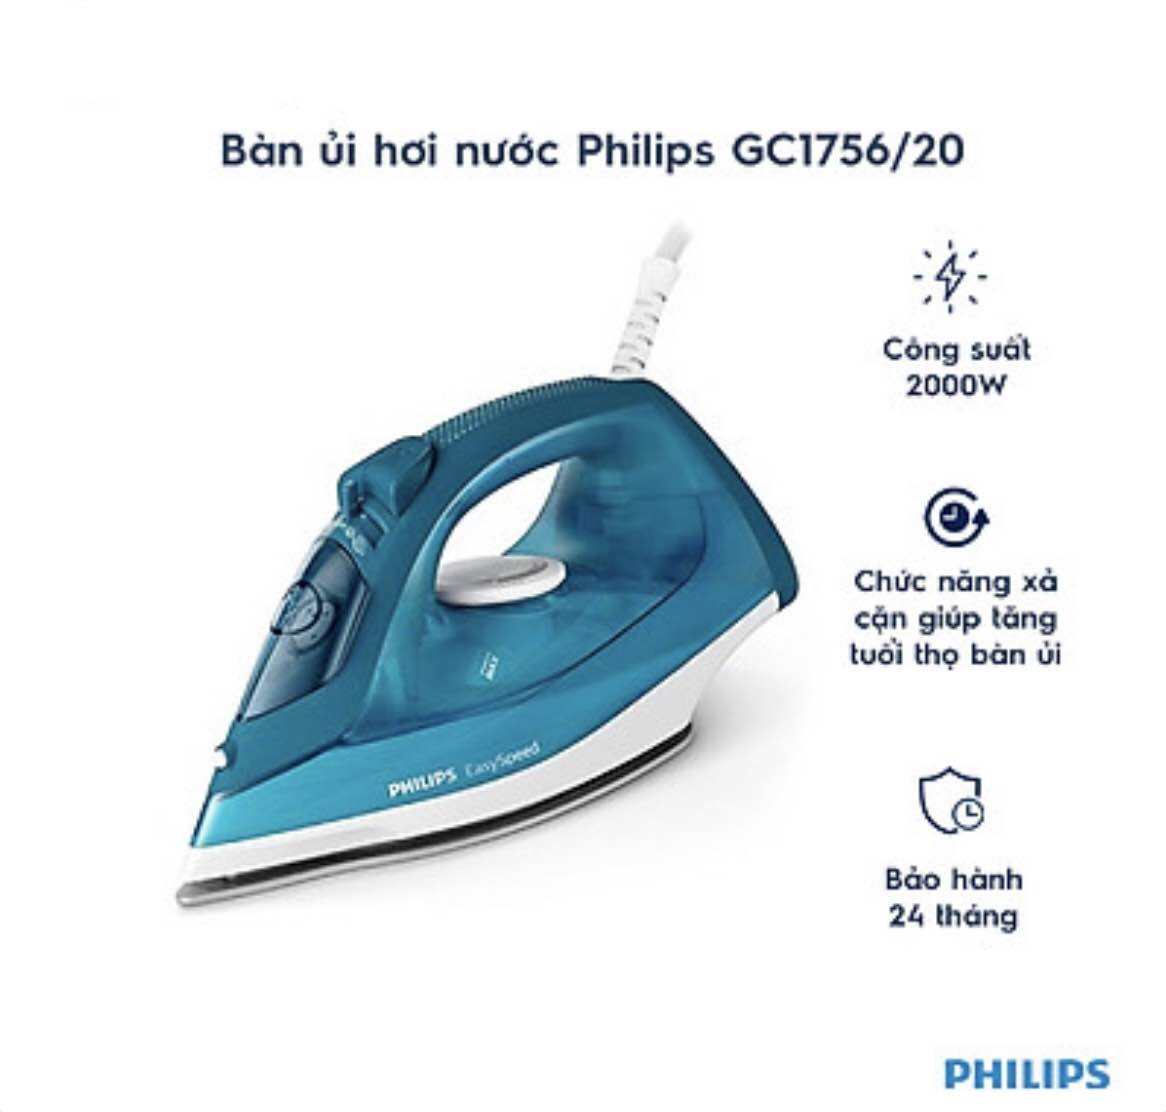 Bàn ủi hơi nước Philips GC1756 2000W - Hàng chính hãng